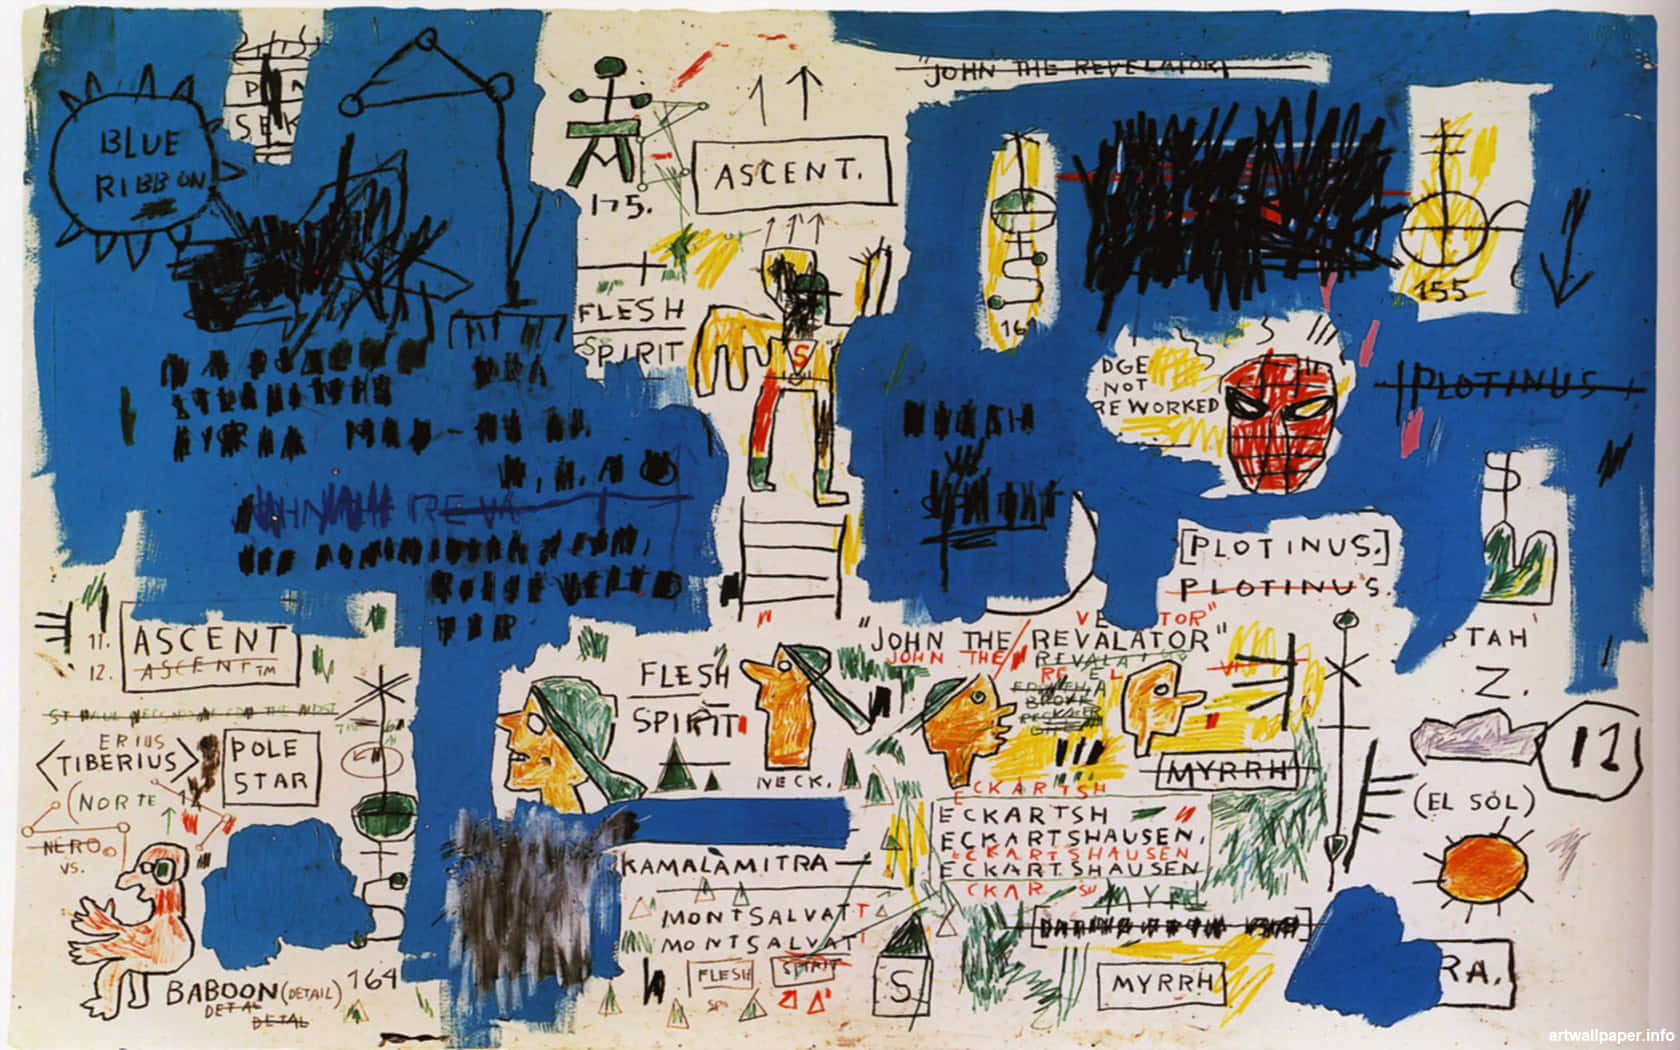 Jean-Michel Basquiat, en produktiv og indflydelsesrig kunstner fra 1980'erne, bliver til liv på din skærm! Wallpaper